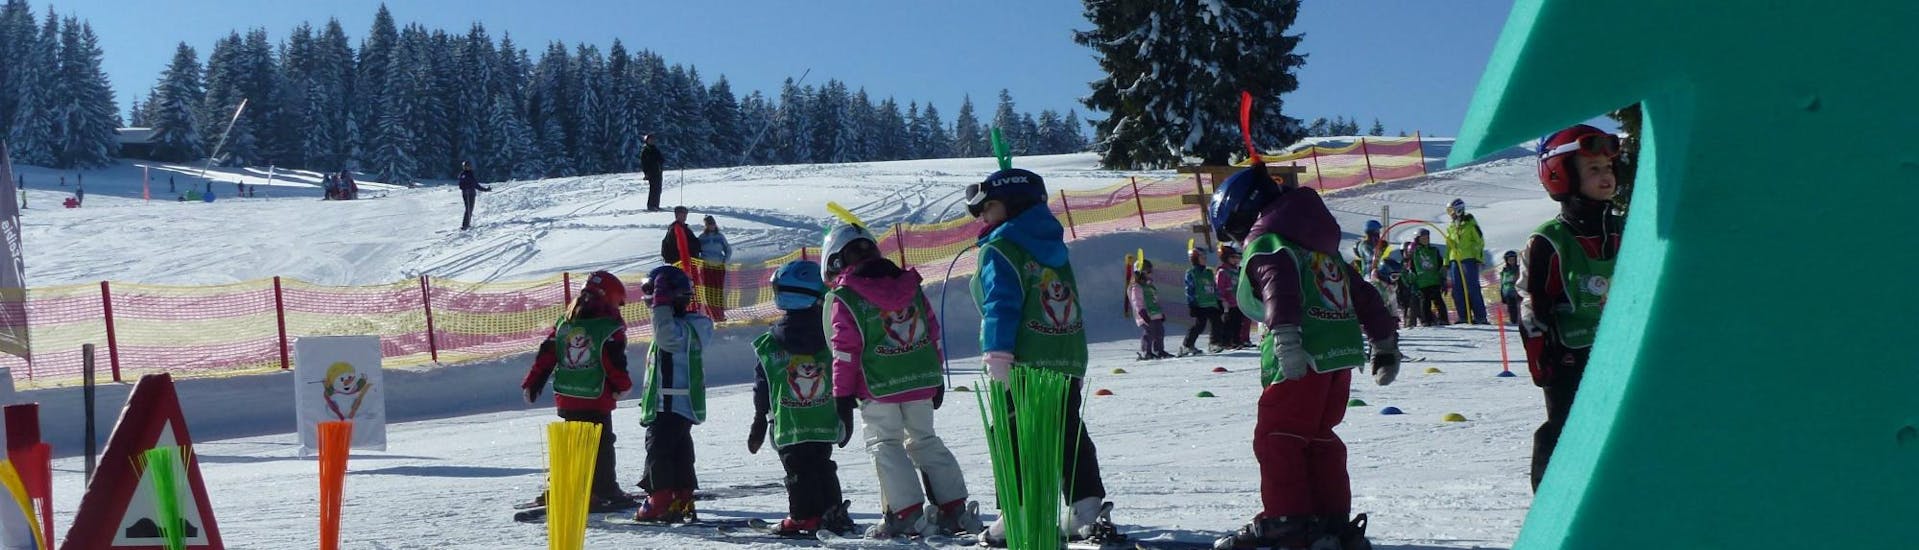 Lezioni di sci per bambini a partire da 10 anni per tutti i livelli.